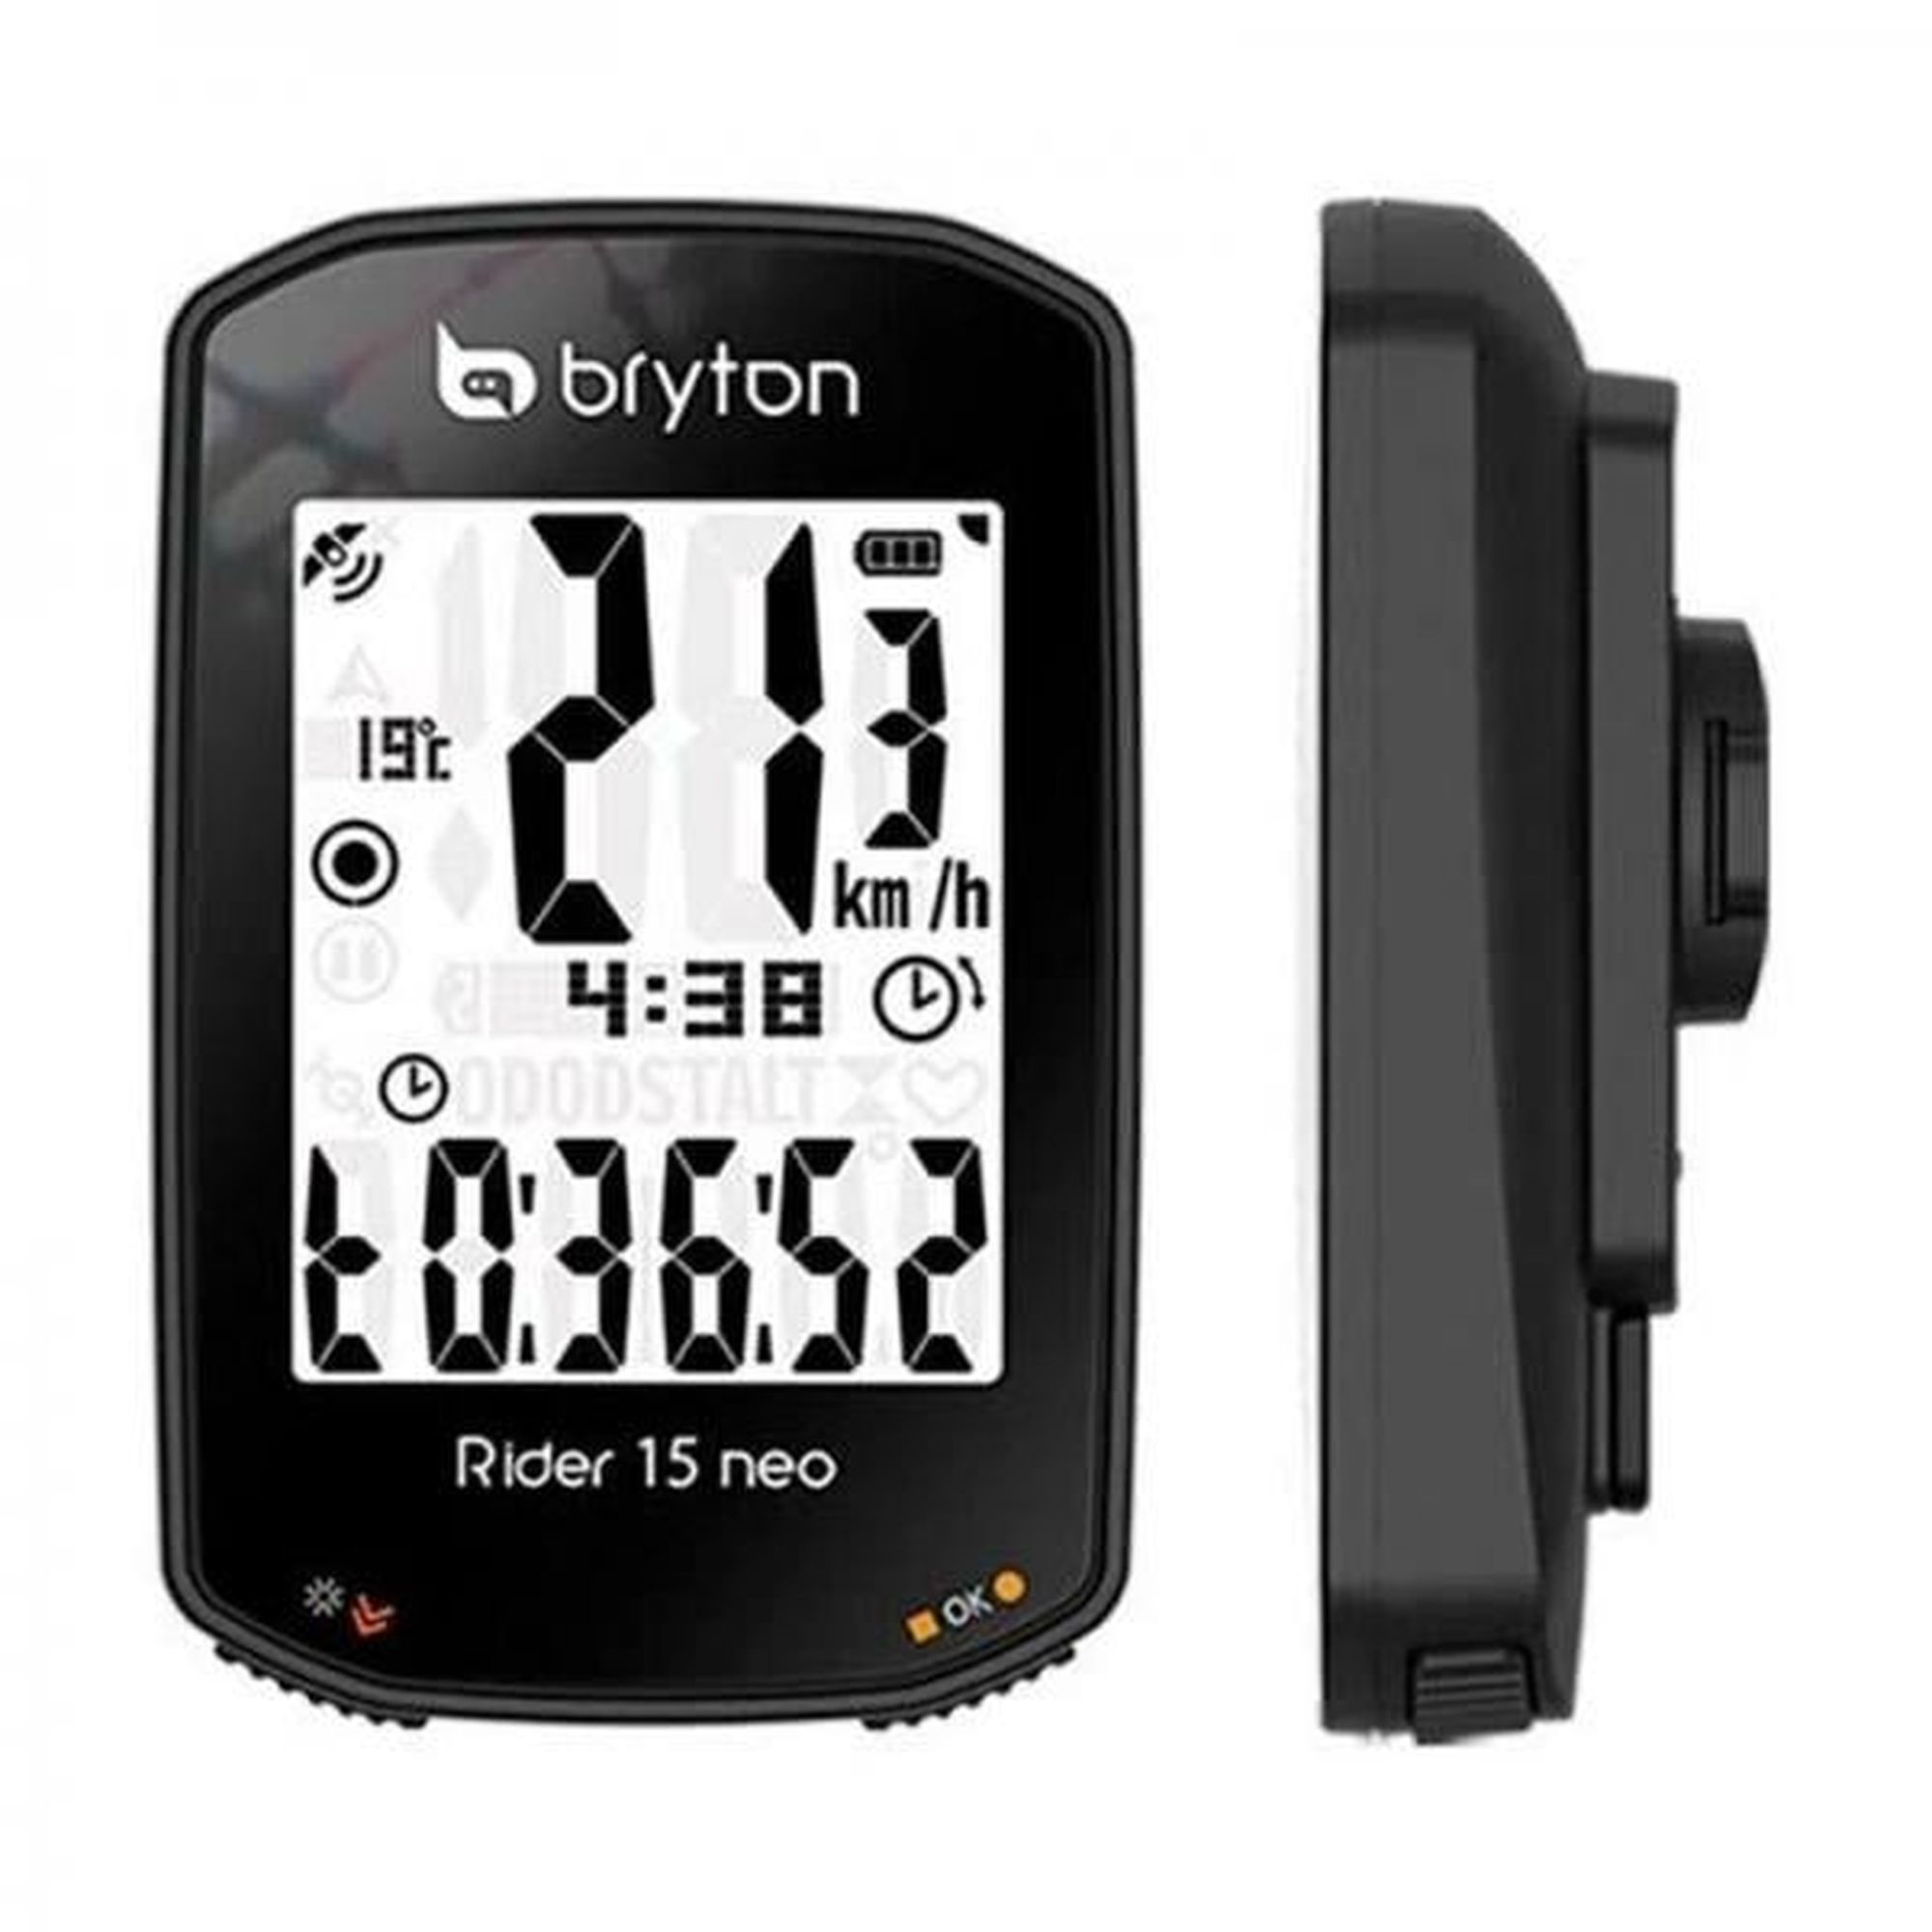 Bryton - Rider 750 E - Compteur vélo, Achat en ligne